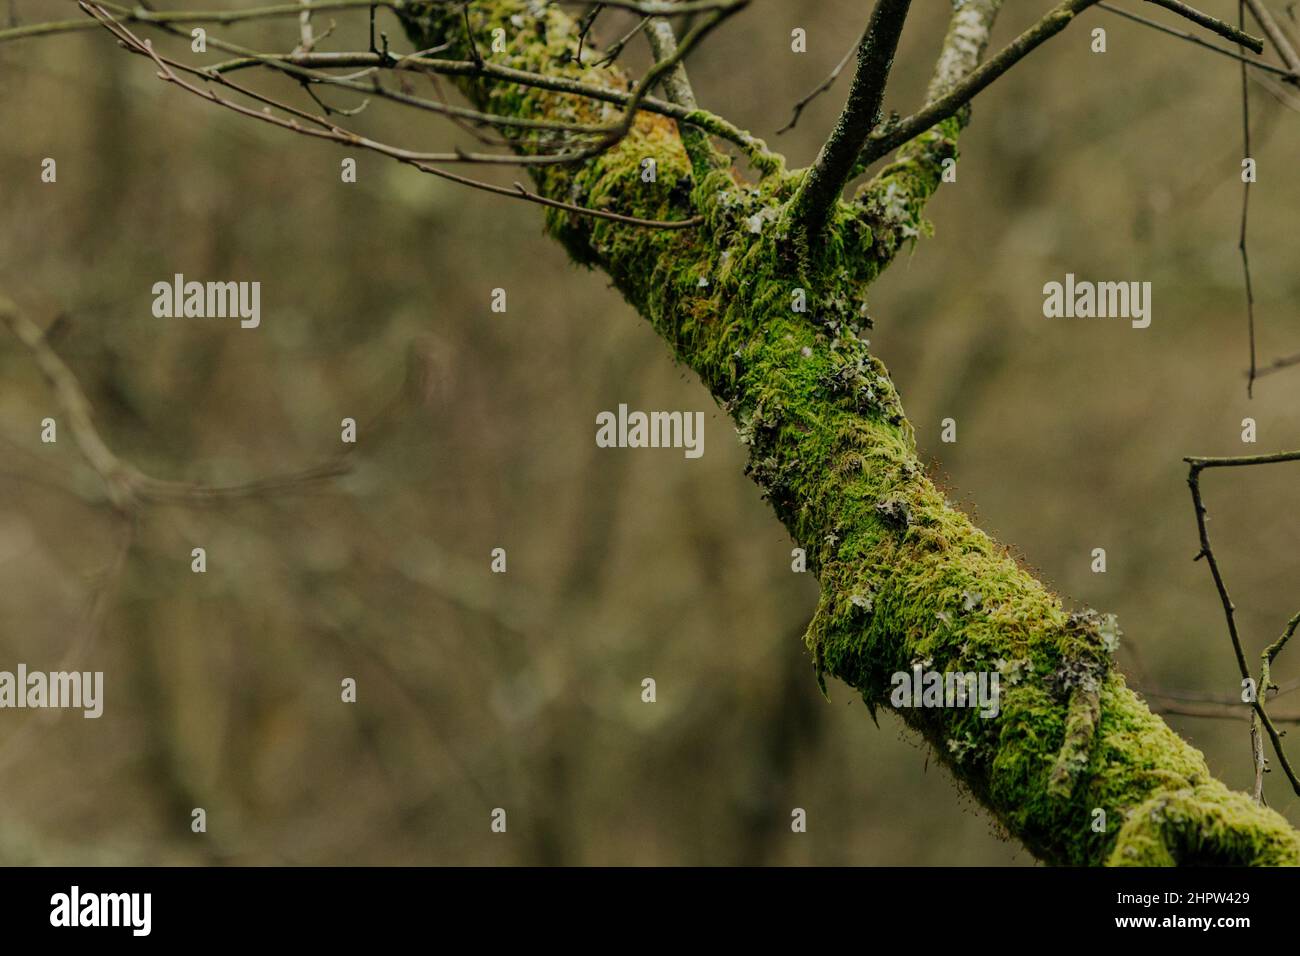 Tronchi di albero coperti di muschio verde in inverno. Freddo e moody con spazio di copia Foto Stock